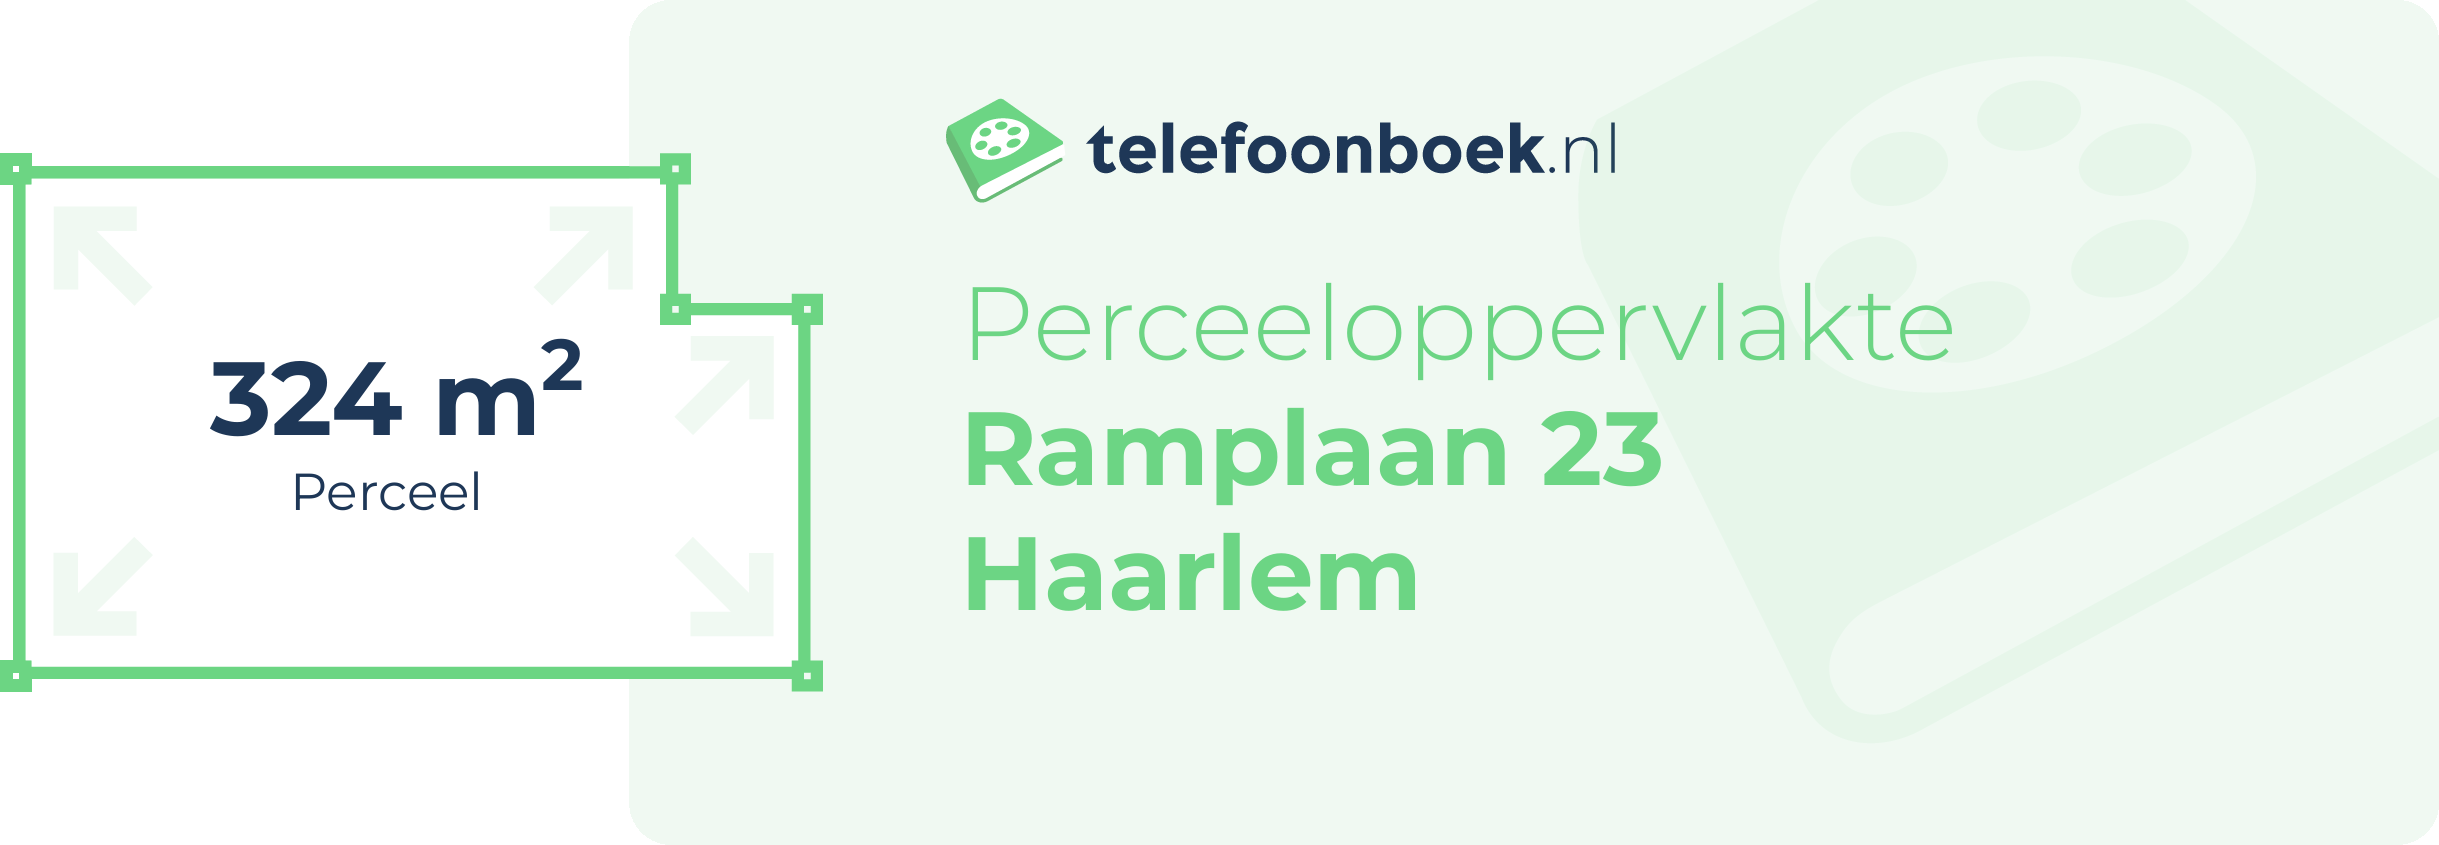 Perceeloppervlakte Ramplaan 23 Haarlem